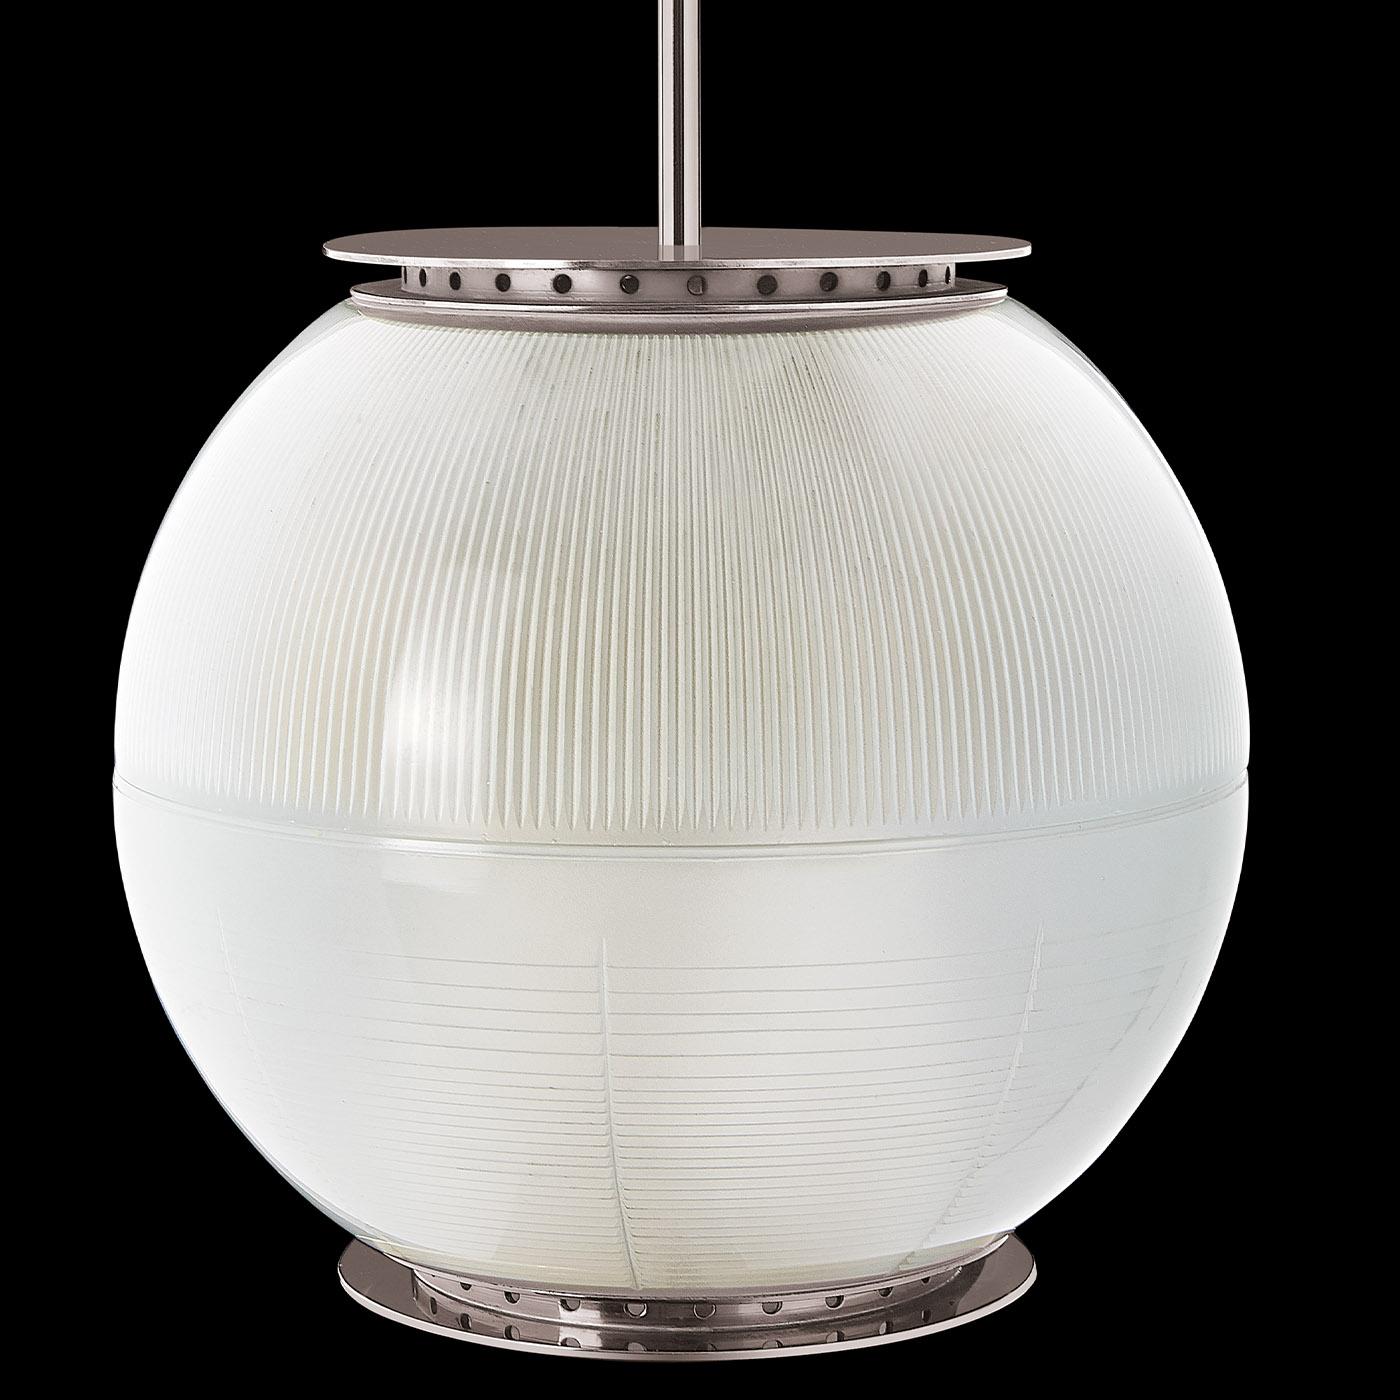 Design industriel-chic de caractère contemporain, cette lampe suspendue appartient à la série de luminaires Doppio Vetro conçue par Ignazio Gardella et se distingue par deux abat-jour semi-sphériques en verre imprimé, avec une finition intérieure